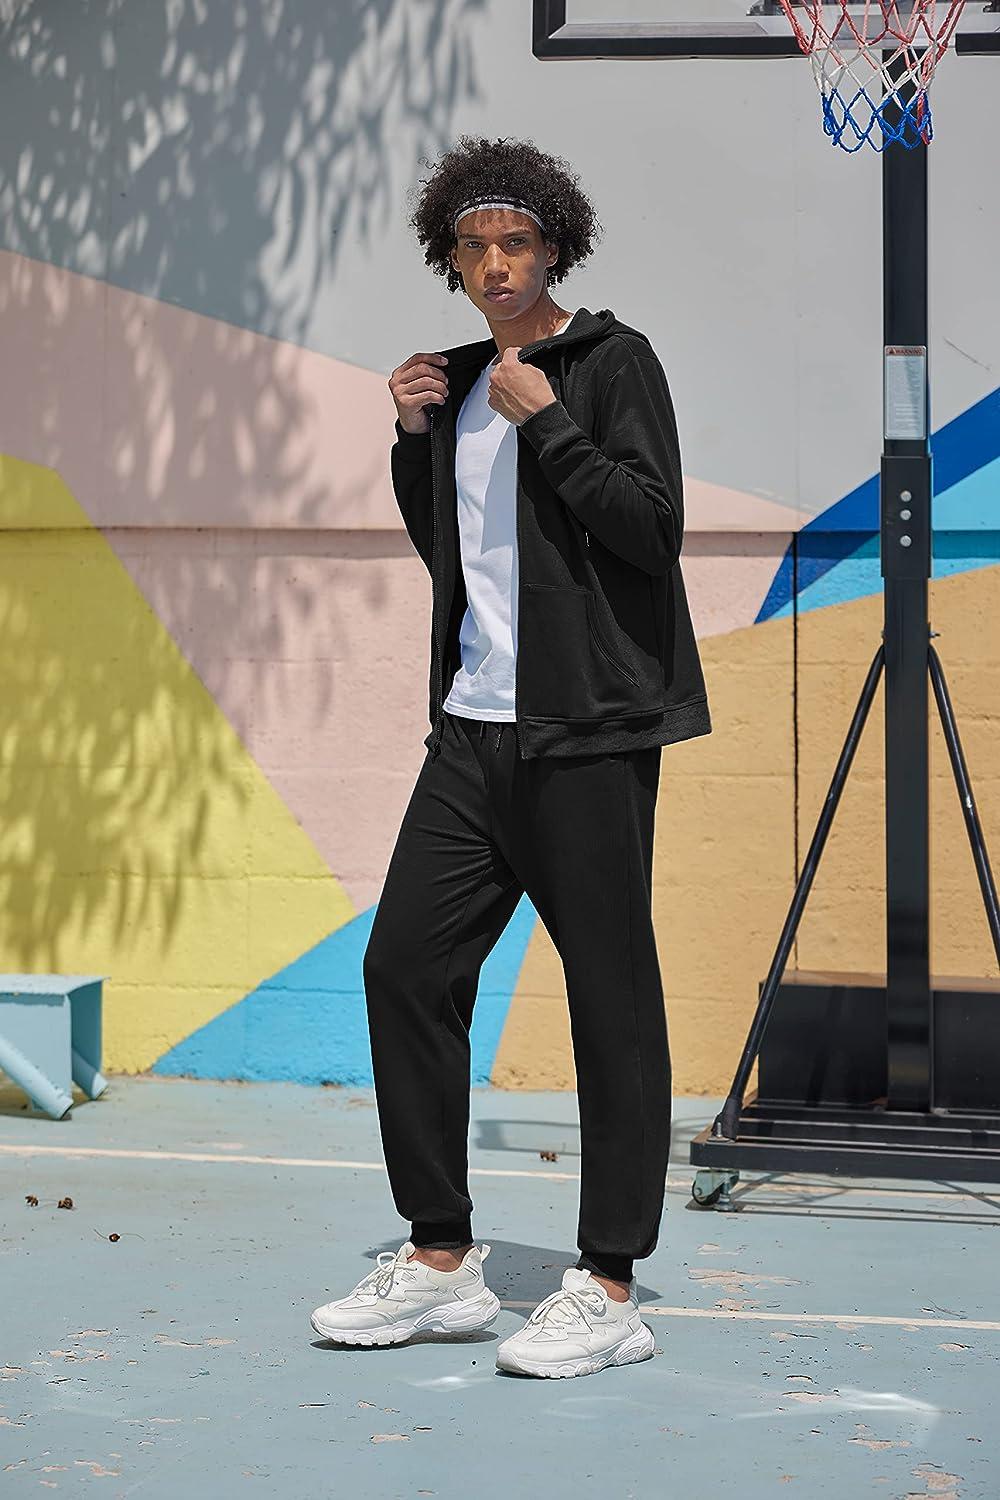 COOFANDY Mens 2 Piece Velour Tracksuit Full Zip Jackets Pants Velvet  Jogging Suits Sweatsuit Set at  Men’s Clothing store